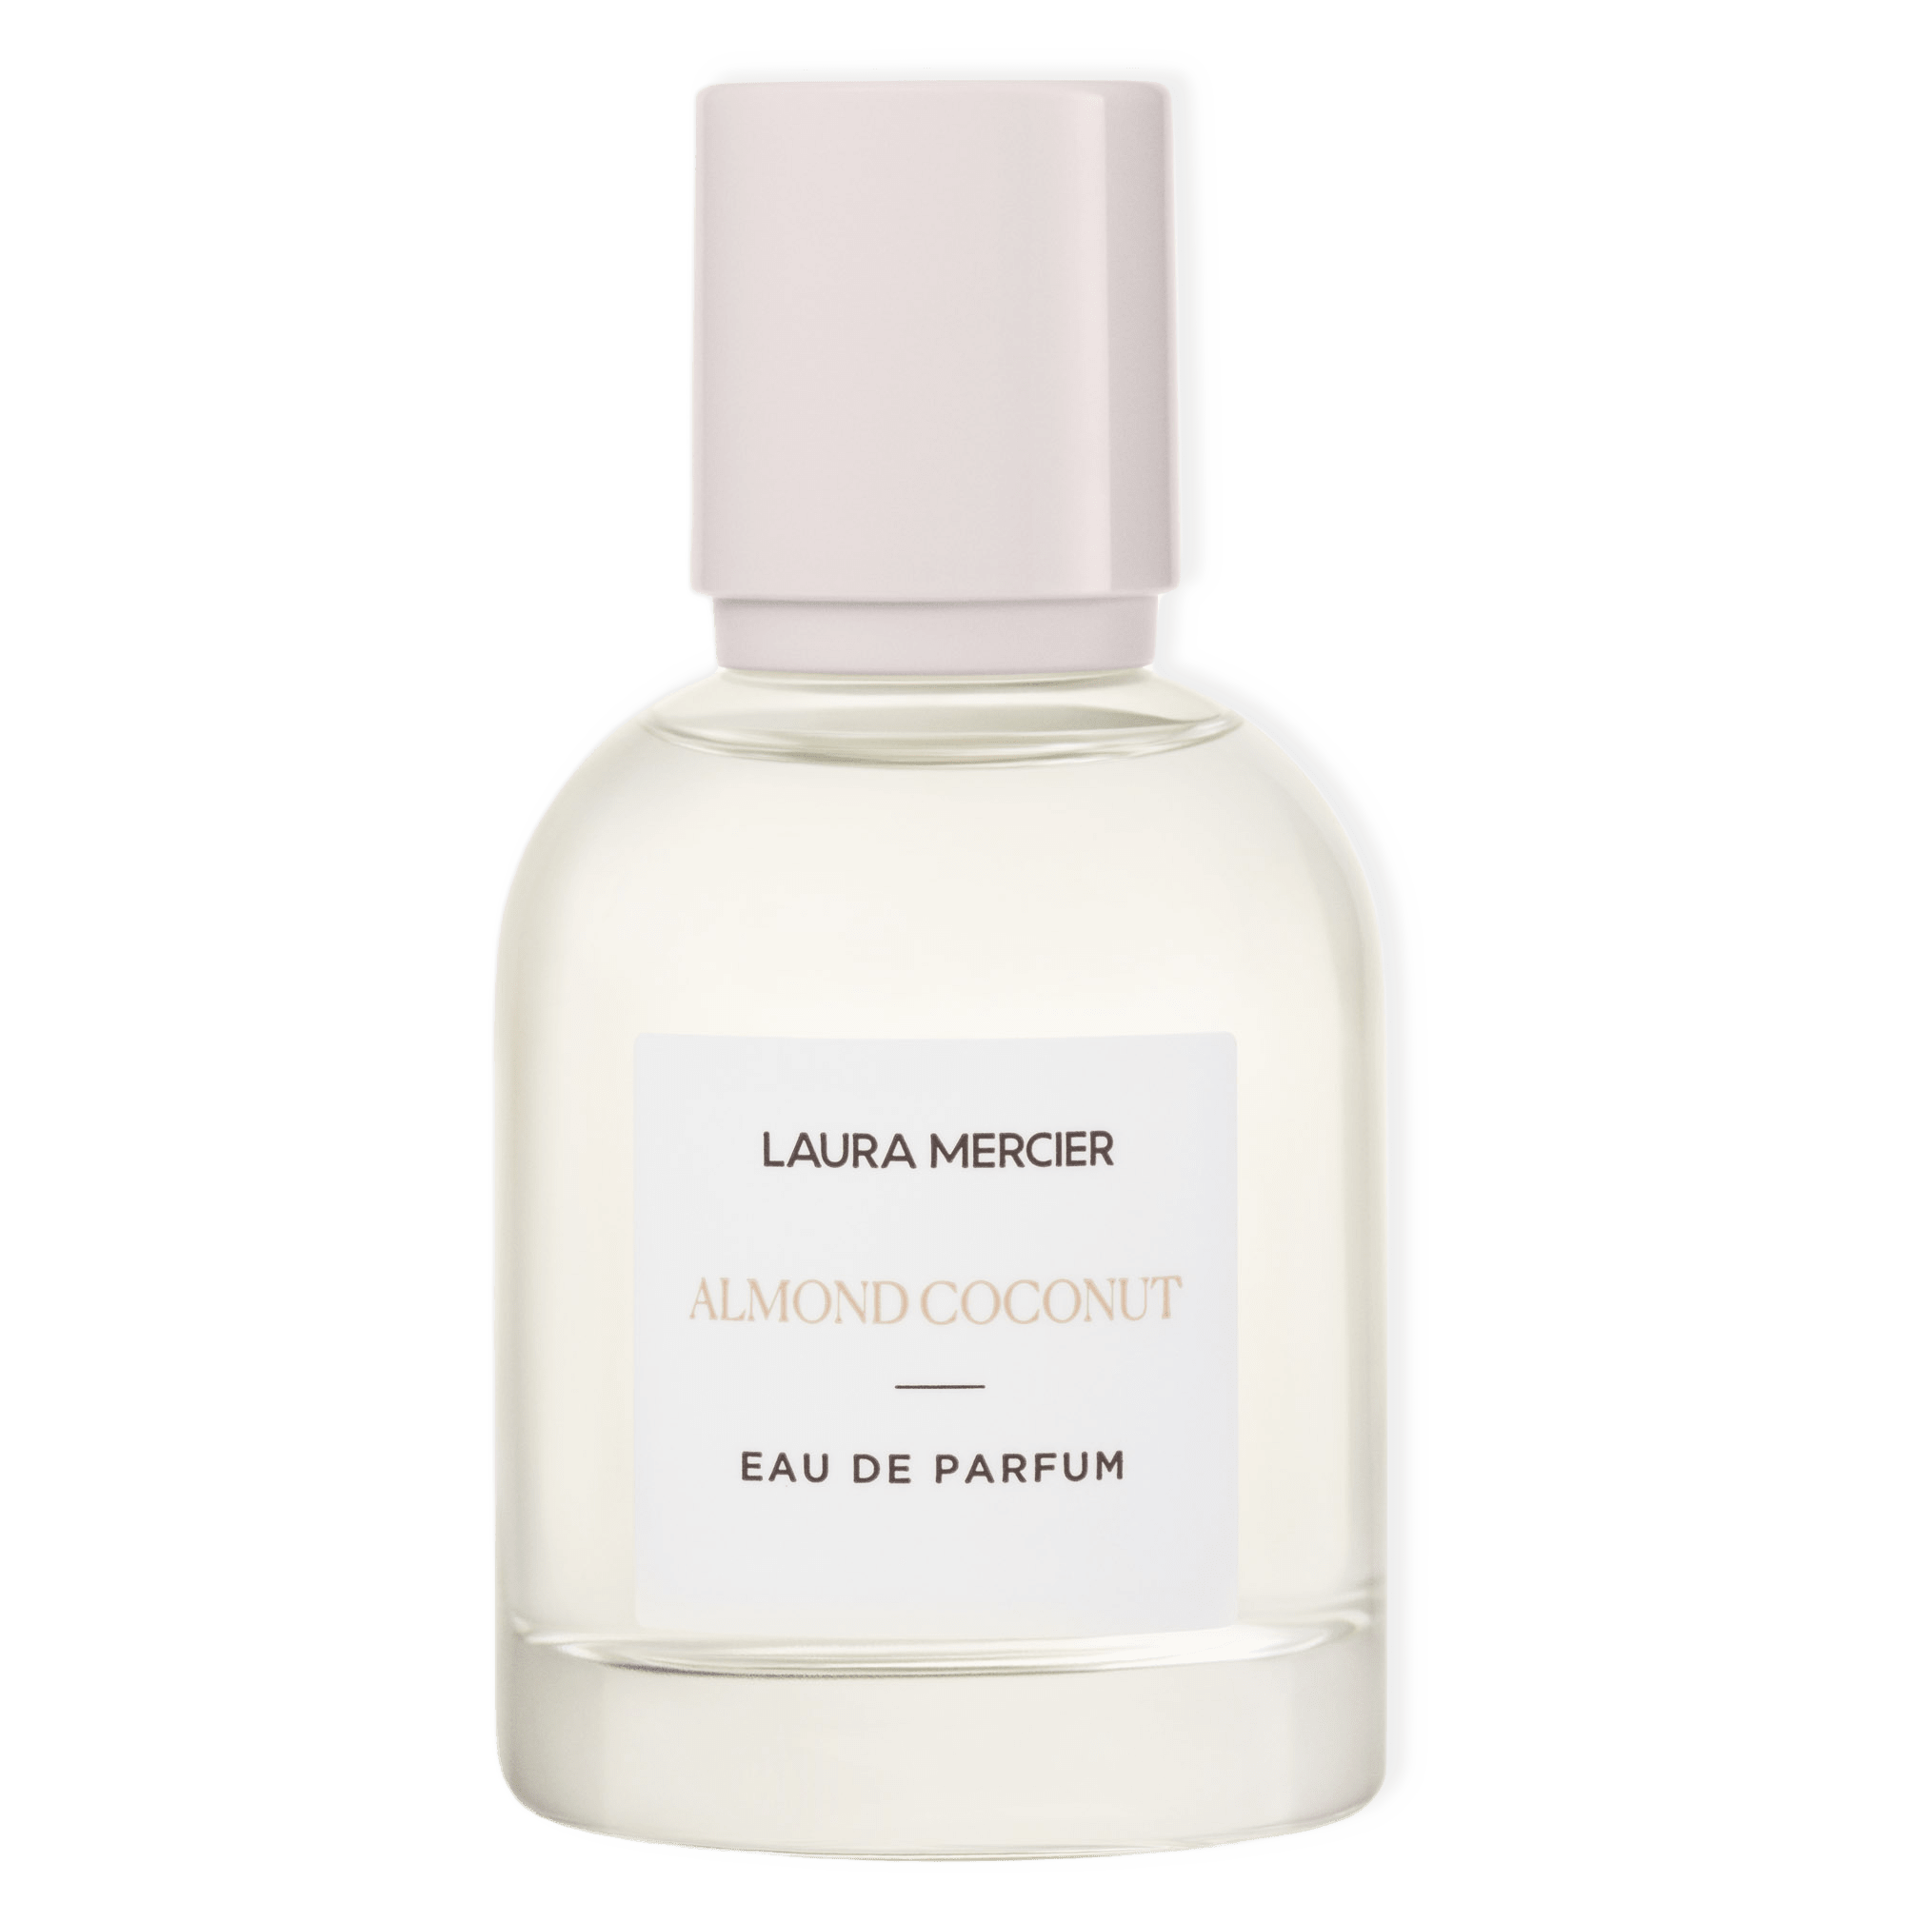 Almond Coconut Eau De Parfum från Laura Mercier